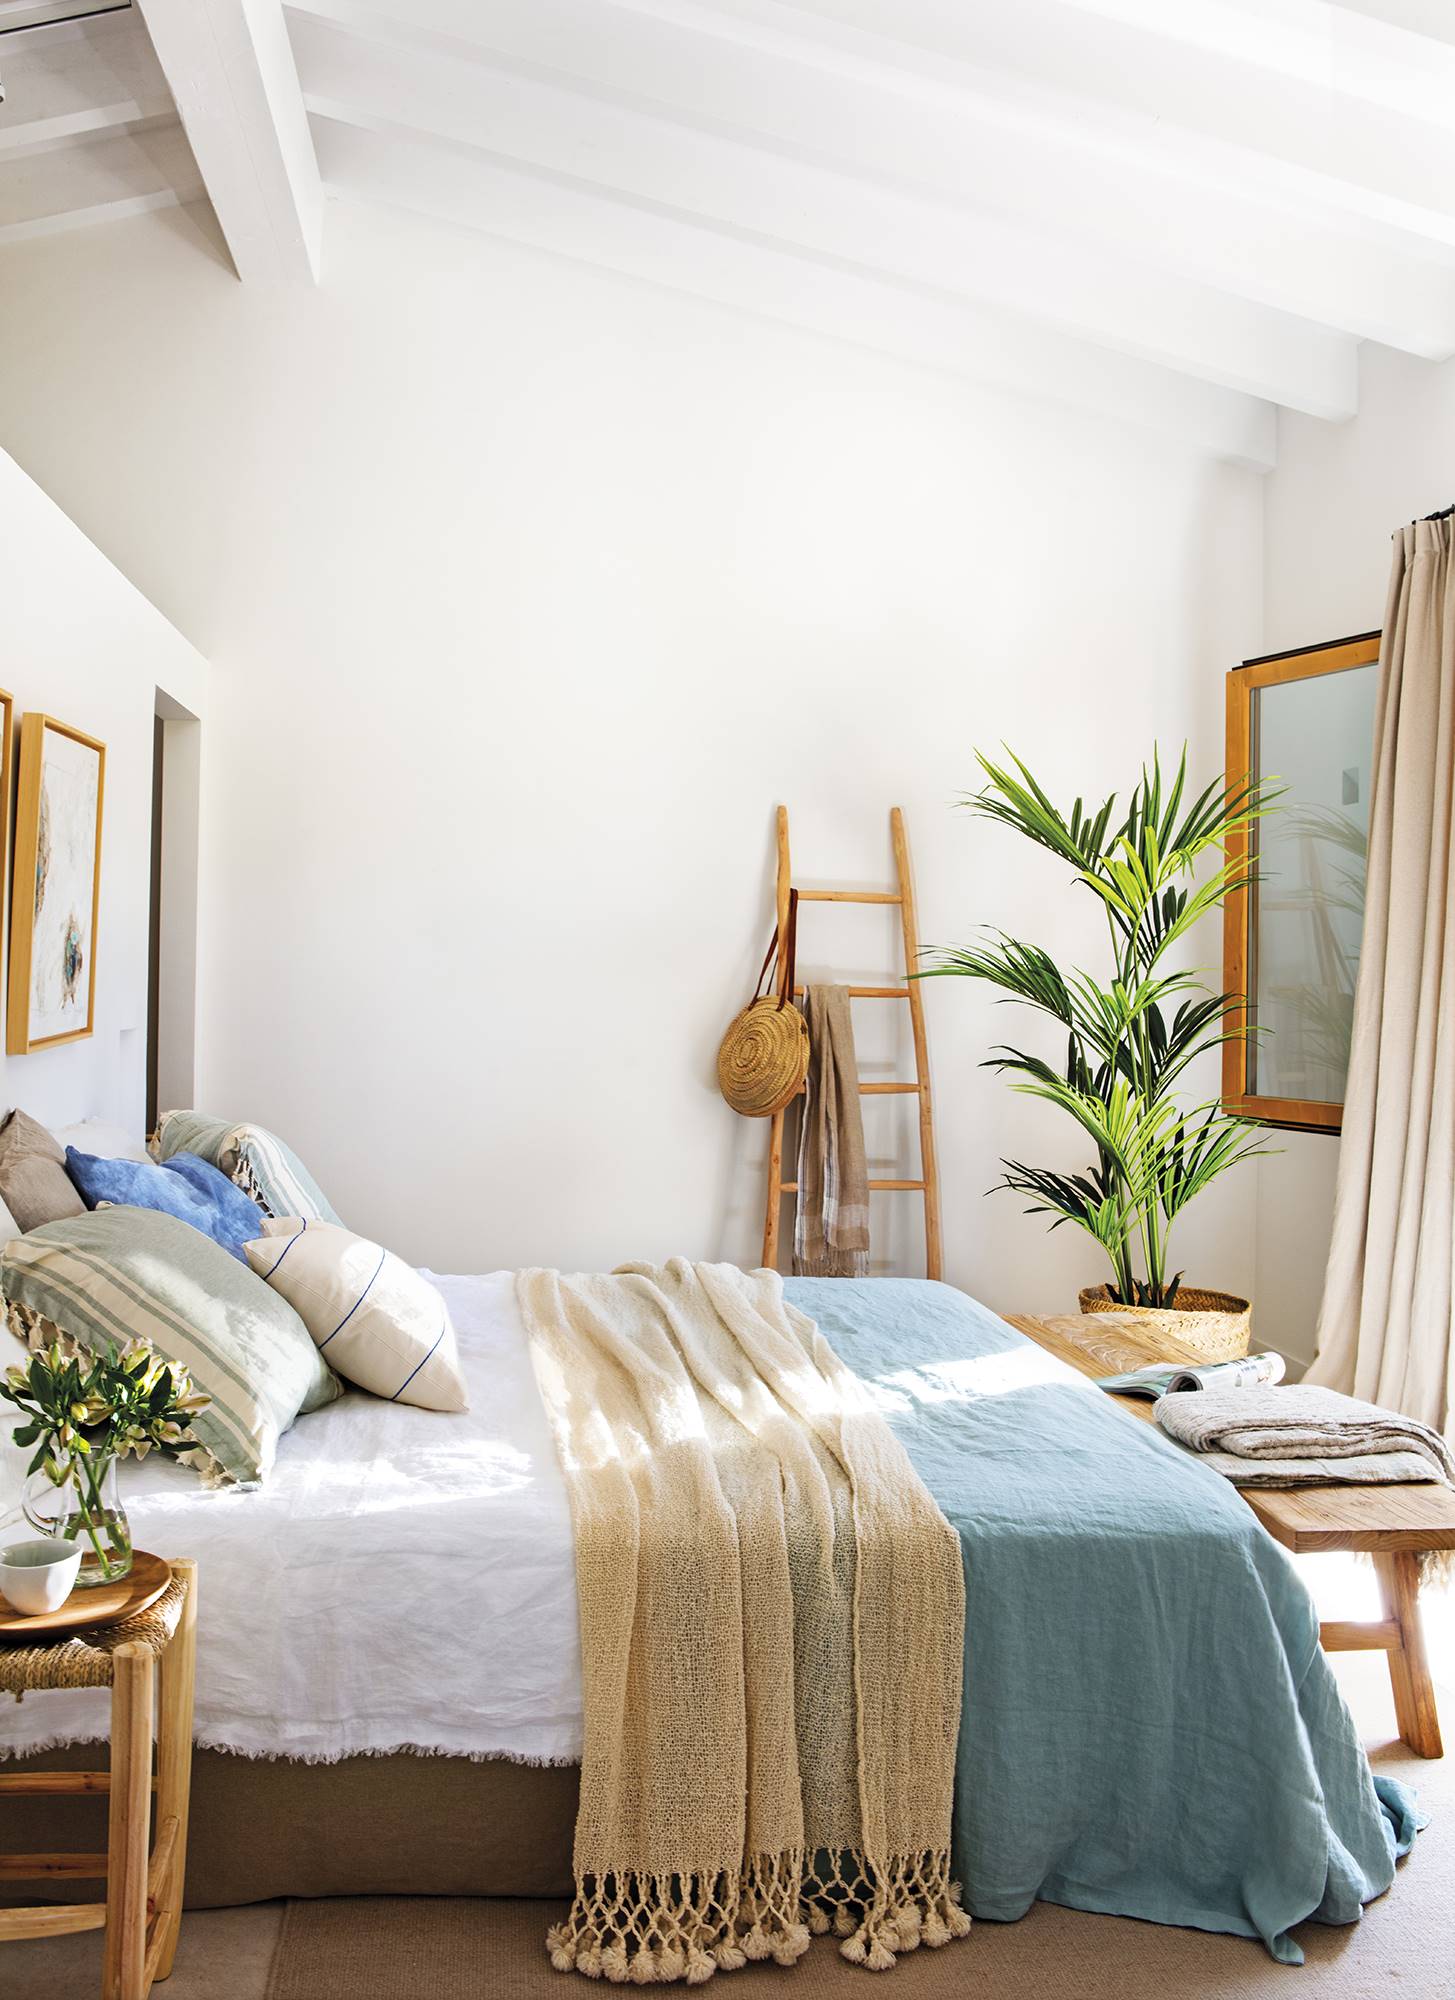 Dormitorio con textiles de cama en beige y azul, taburete como mesilla de noche, banco de madera a los pies y escalera decorativa